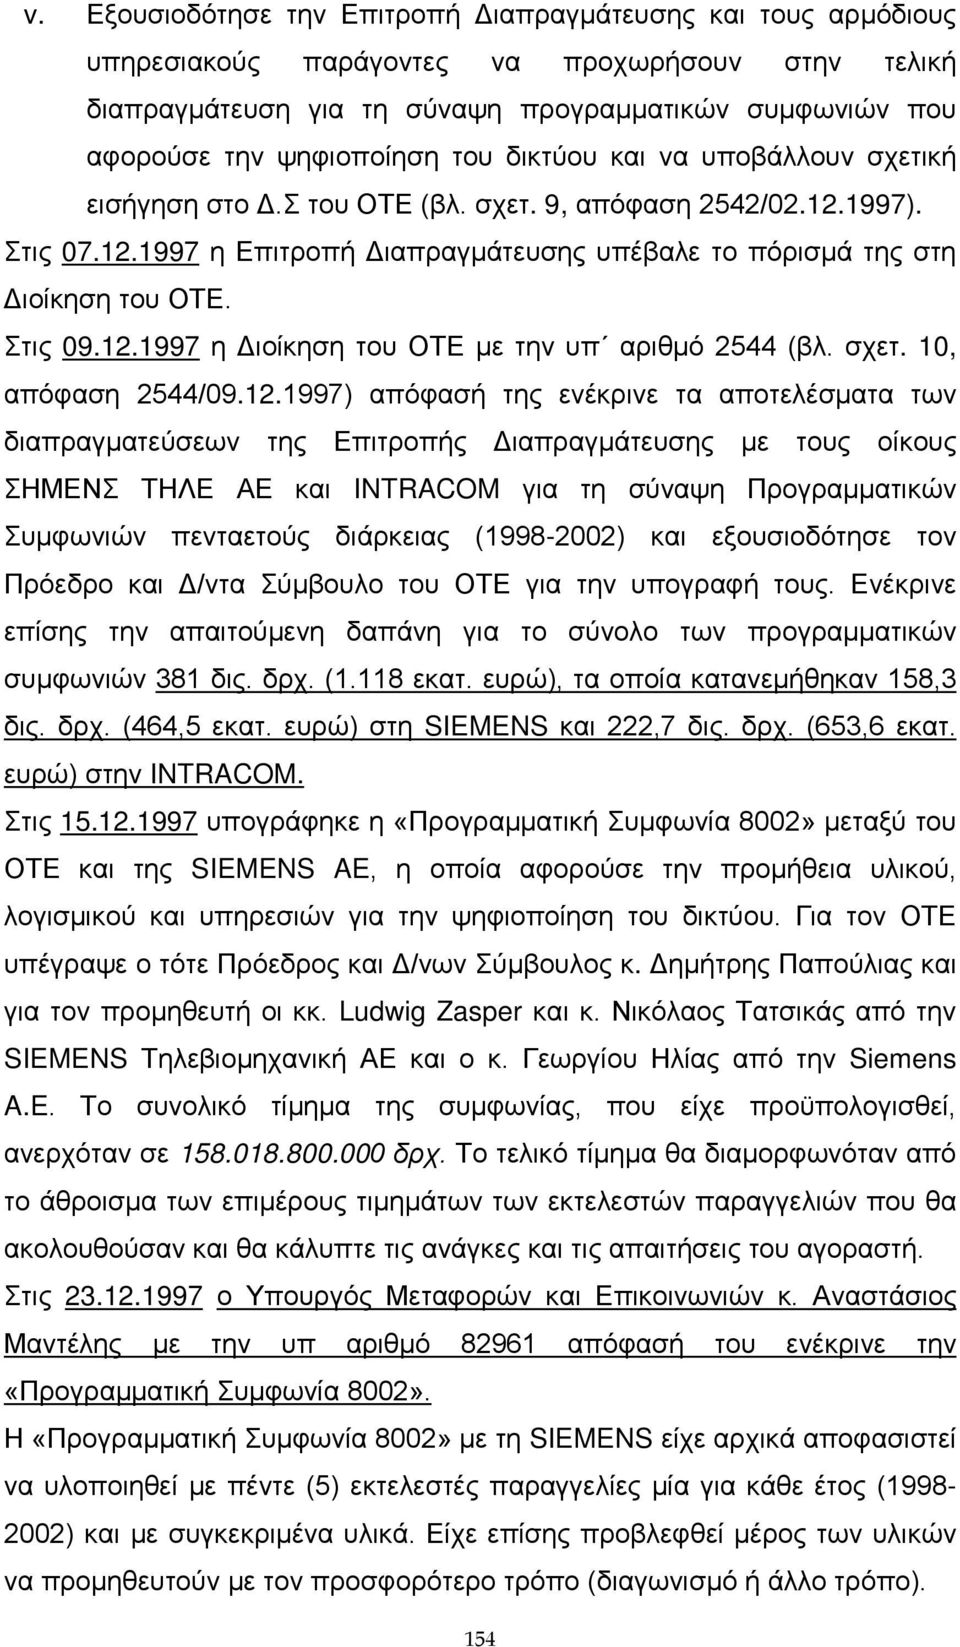 12.1997 η Διοίκηση του ΟΤΕ με την υπ αριθμό 2544 (βλ. σχετ. 10, απόφαση 2544/09.12.1997) απόφασή της ενέκρινε τα αποτελέσματα των διαπραγματεύσεων της Επιτροπής Διαπραγμάτευσης με τους οίκους ΣΗΜΕΝΣ